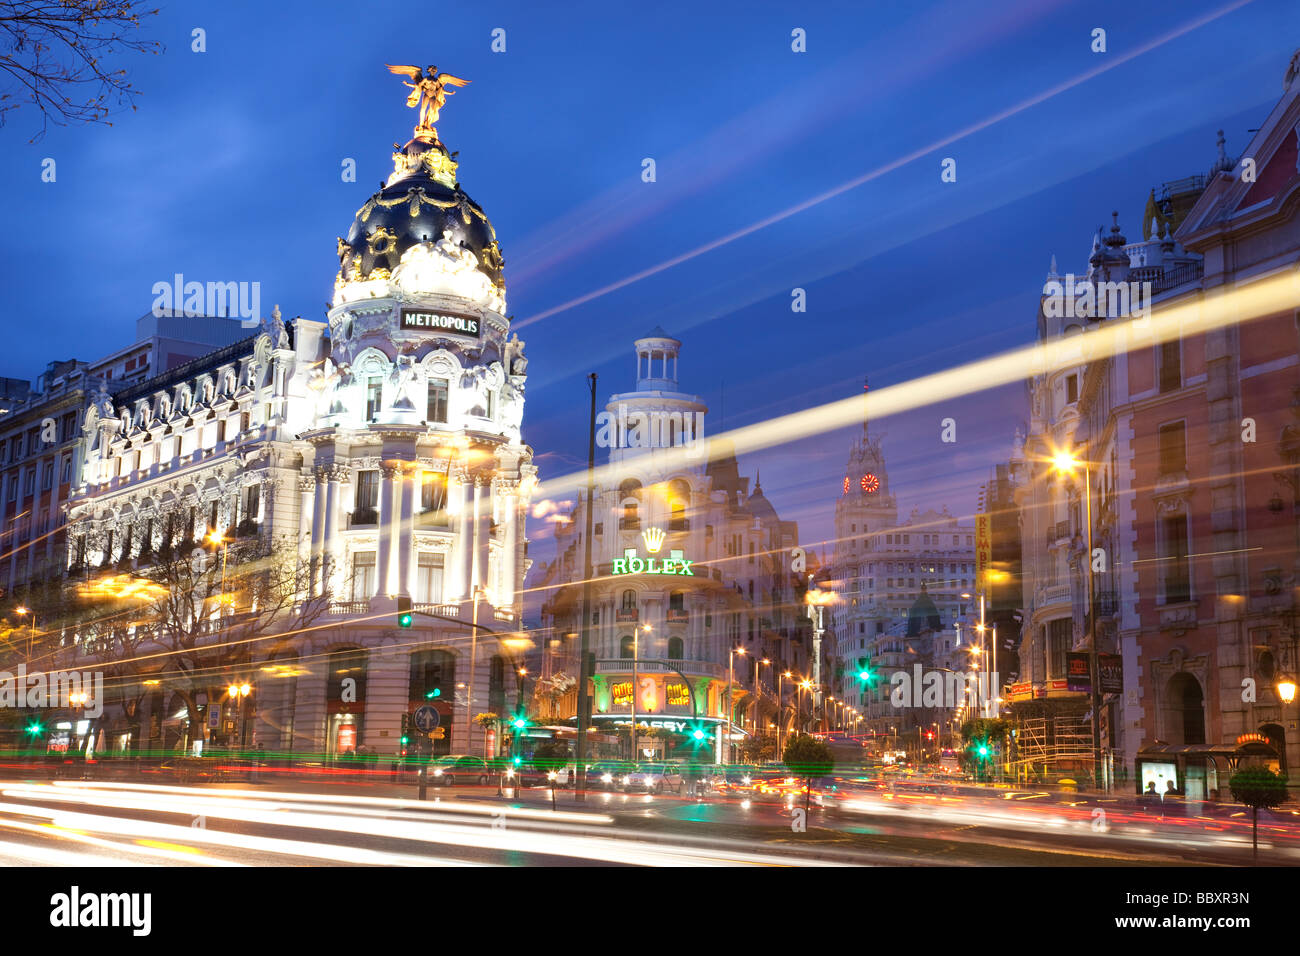 Afficher le long de la Gran Via de Madrid Espagne au crépuscule Banque D'Images